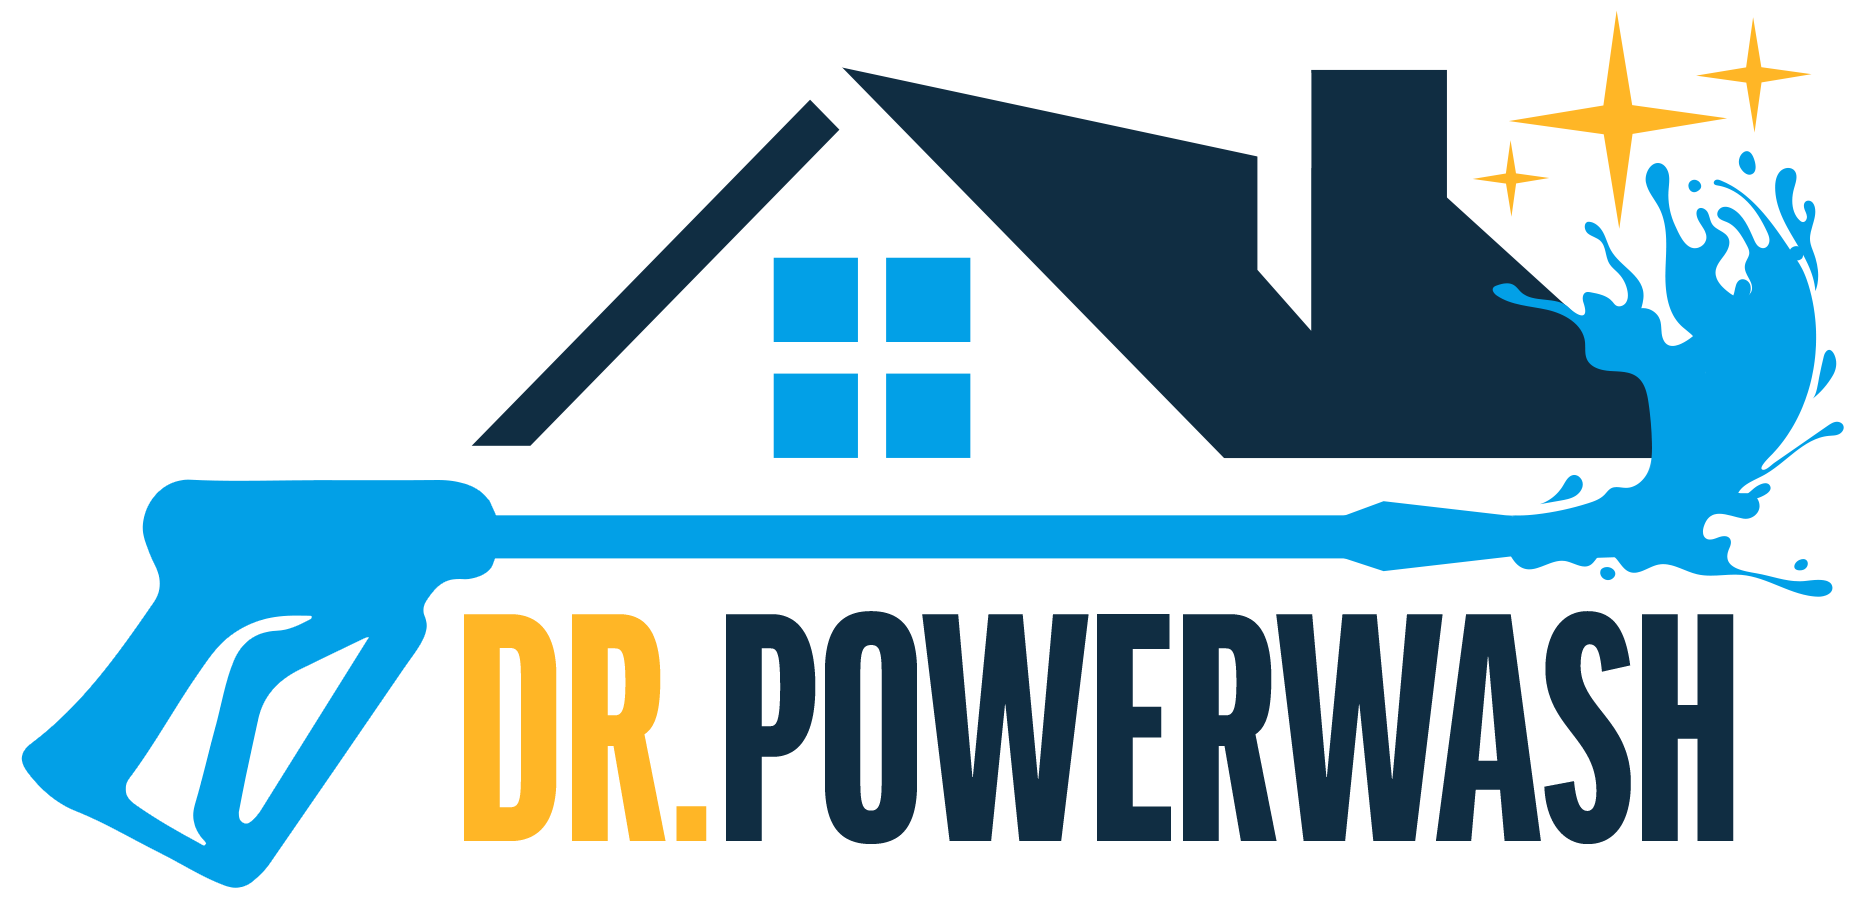 Dr. Powerwash Logo